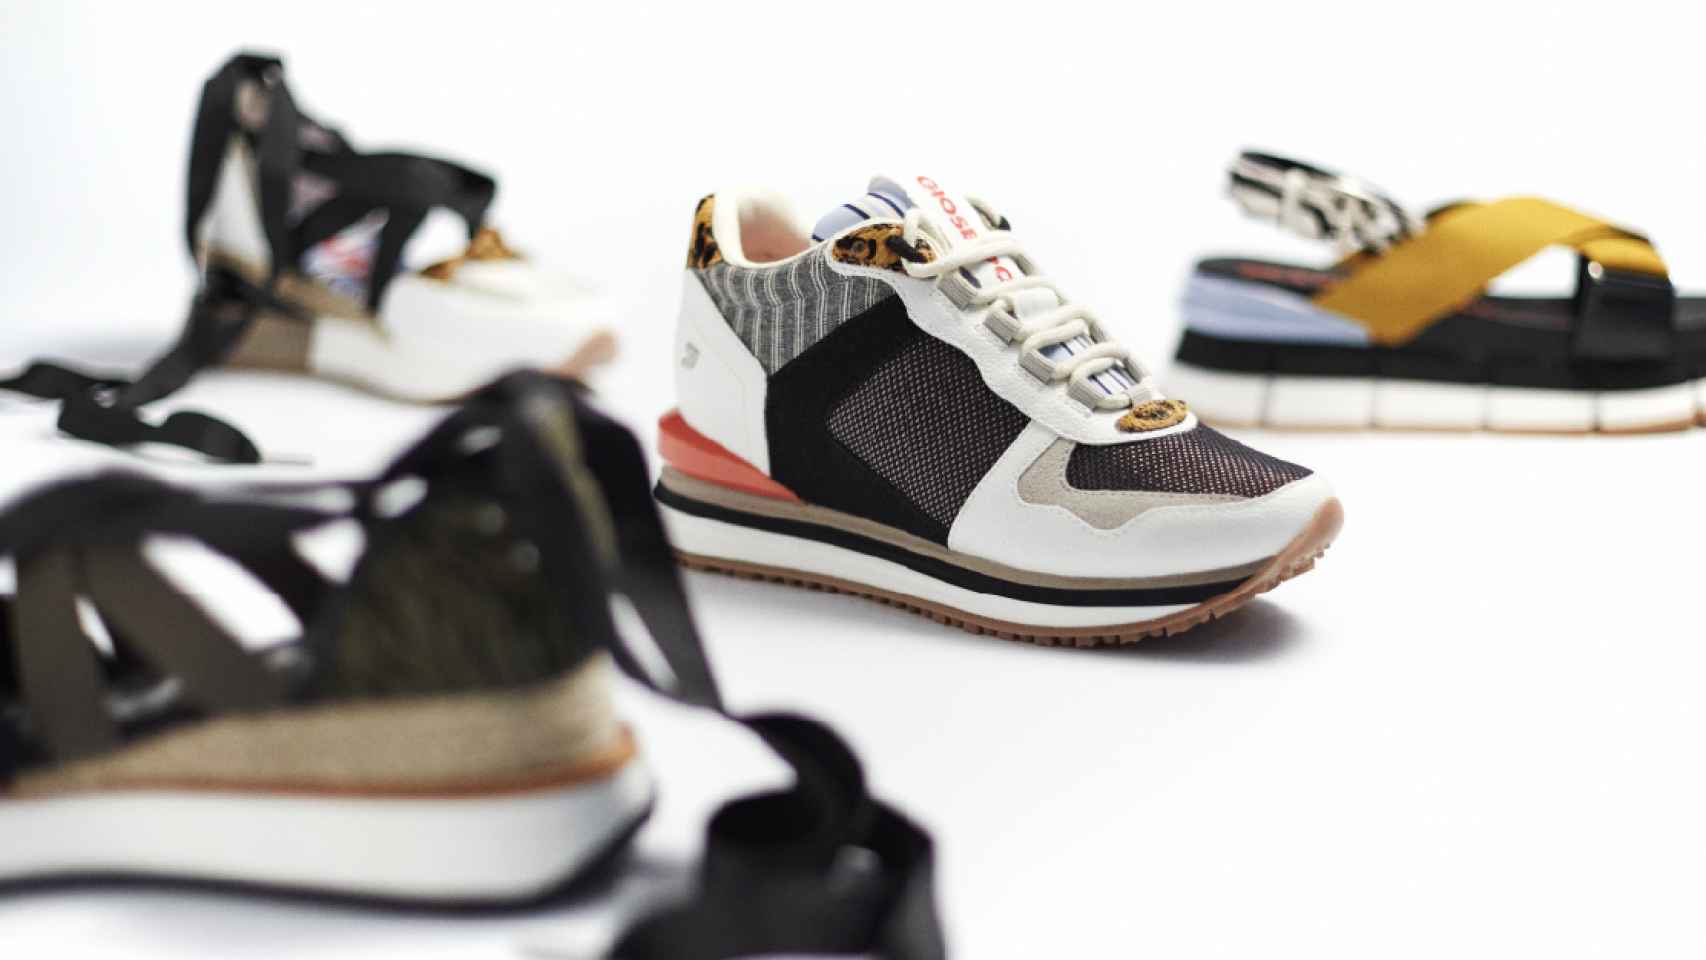 La firma de calzado Gioseppo ha lanzado una nueva colección primavera-verano que destacada por su comodidad.